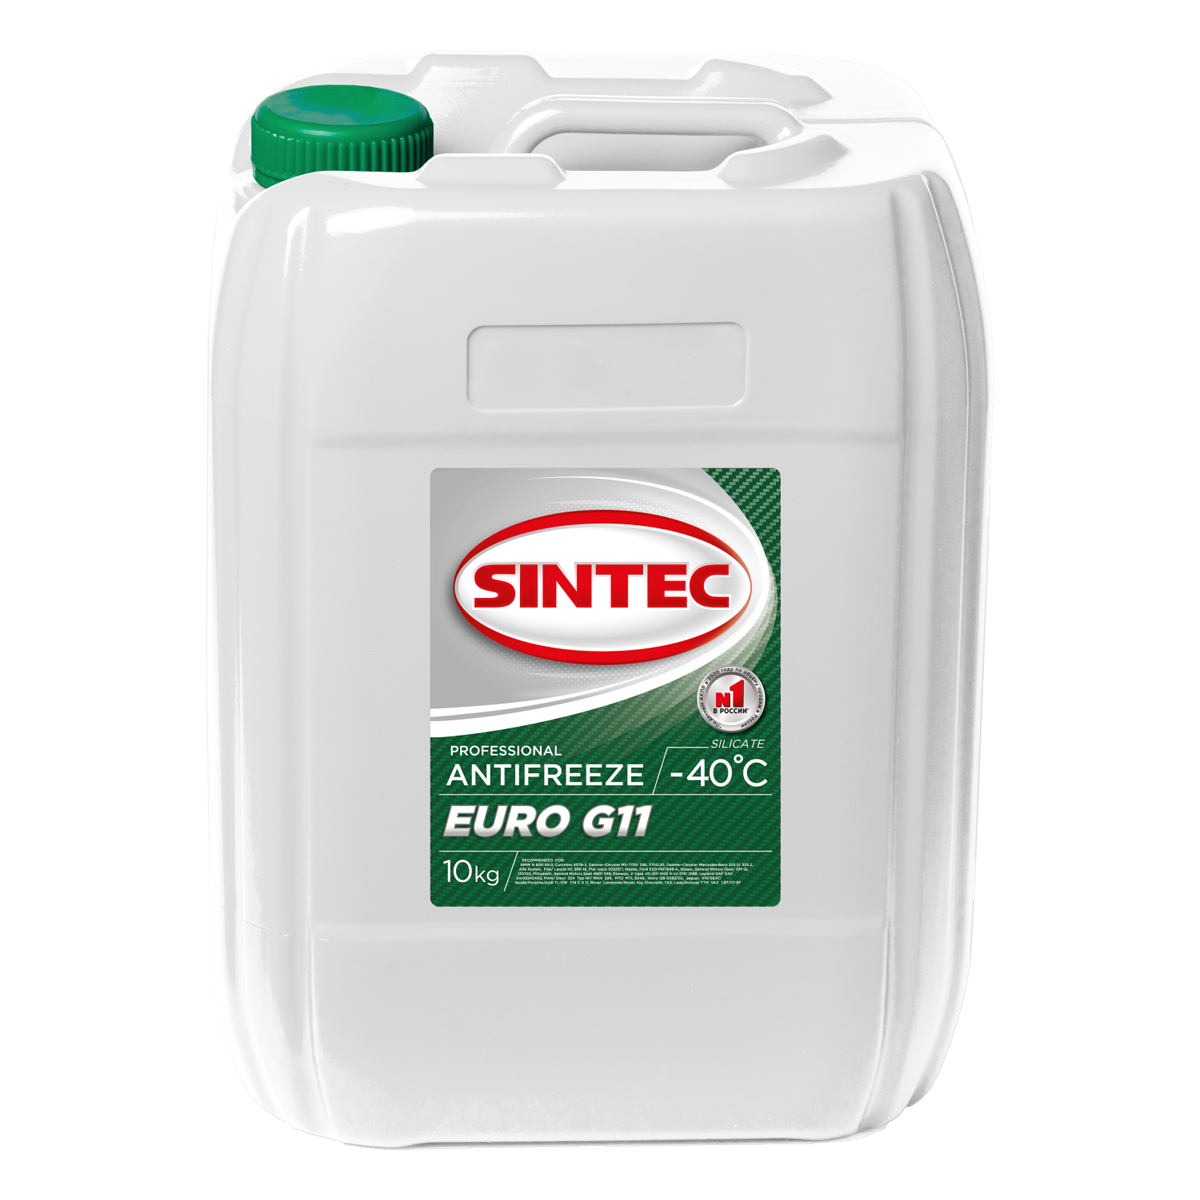 Антифриз SINTEC EURO G11 - 40°C зеленый 10кг.